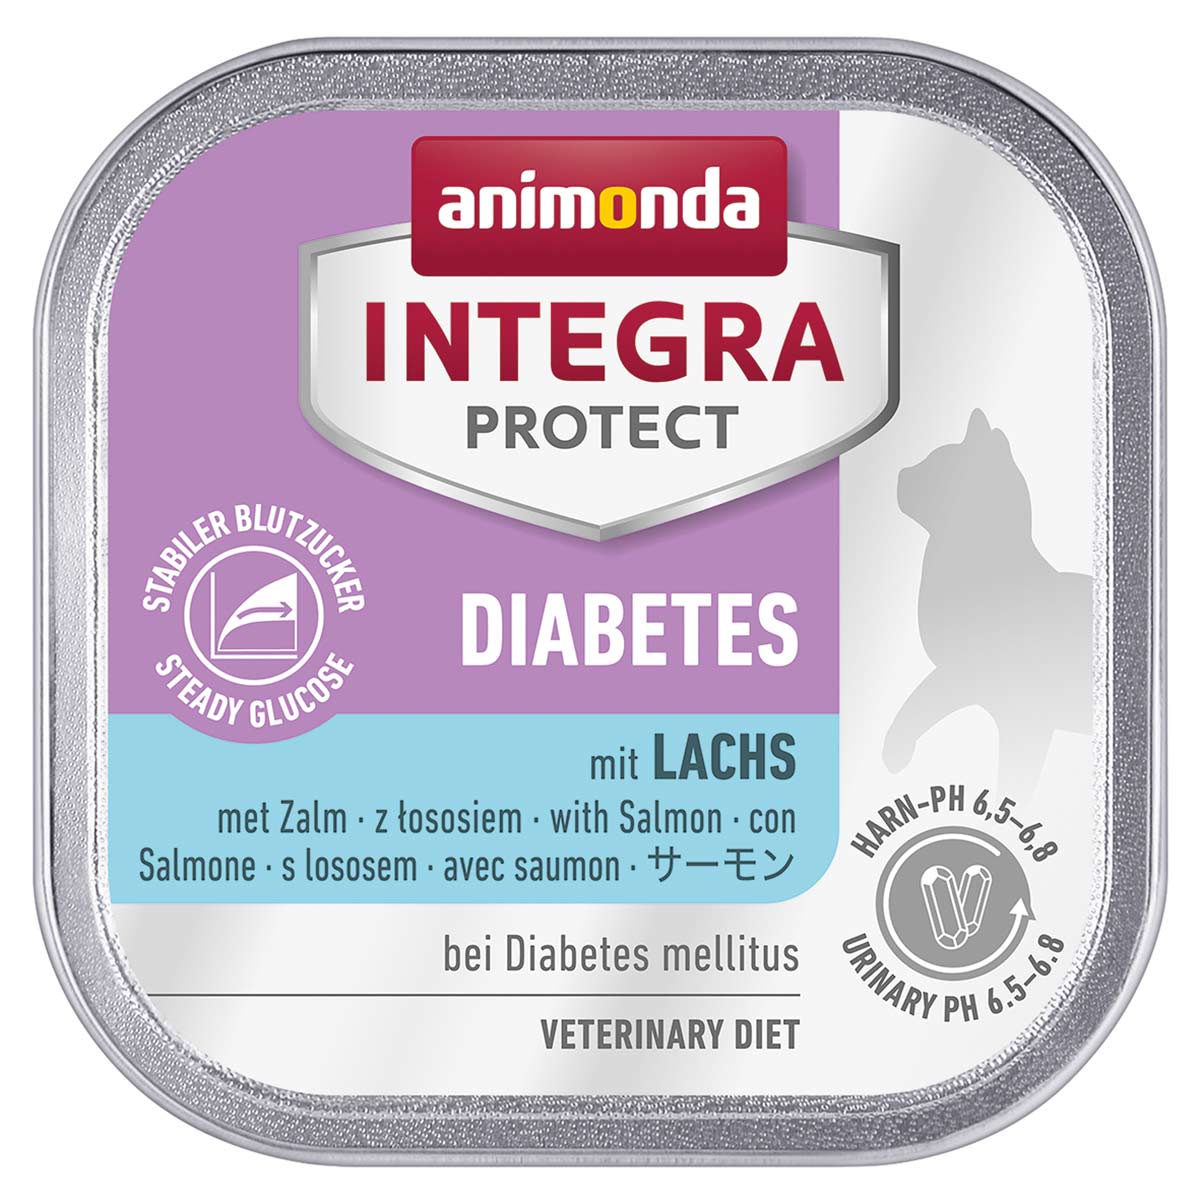 animonda INTEGRA PROTECT Diabetes mit Lachs 6x100g